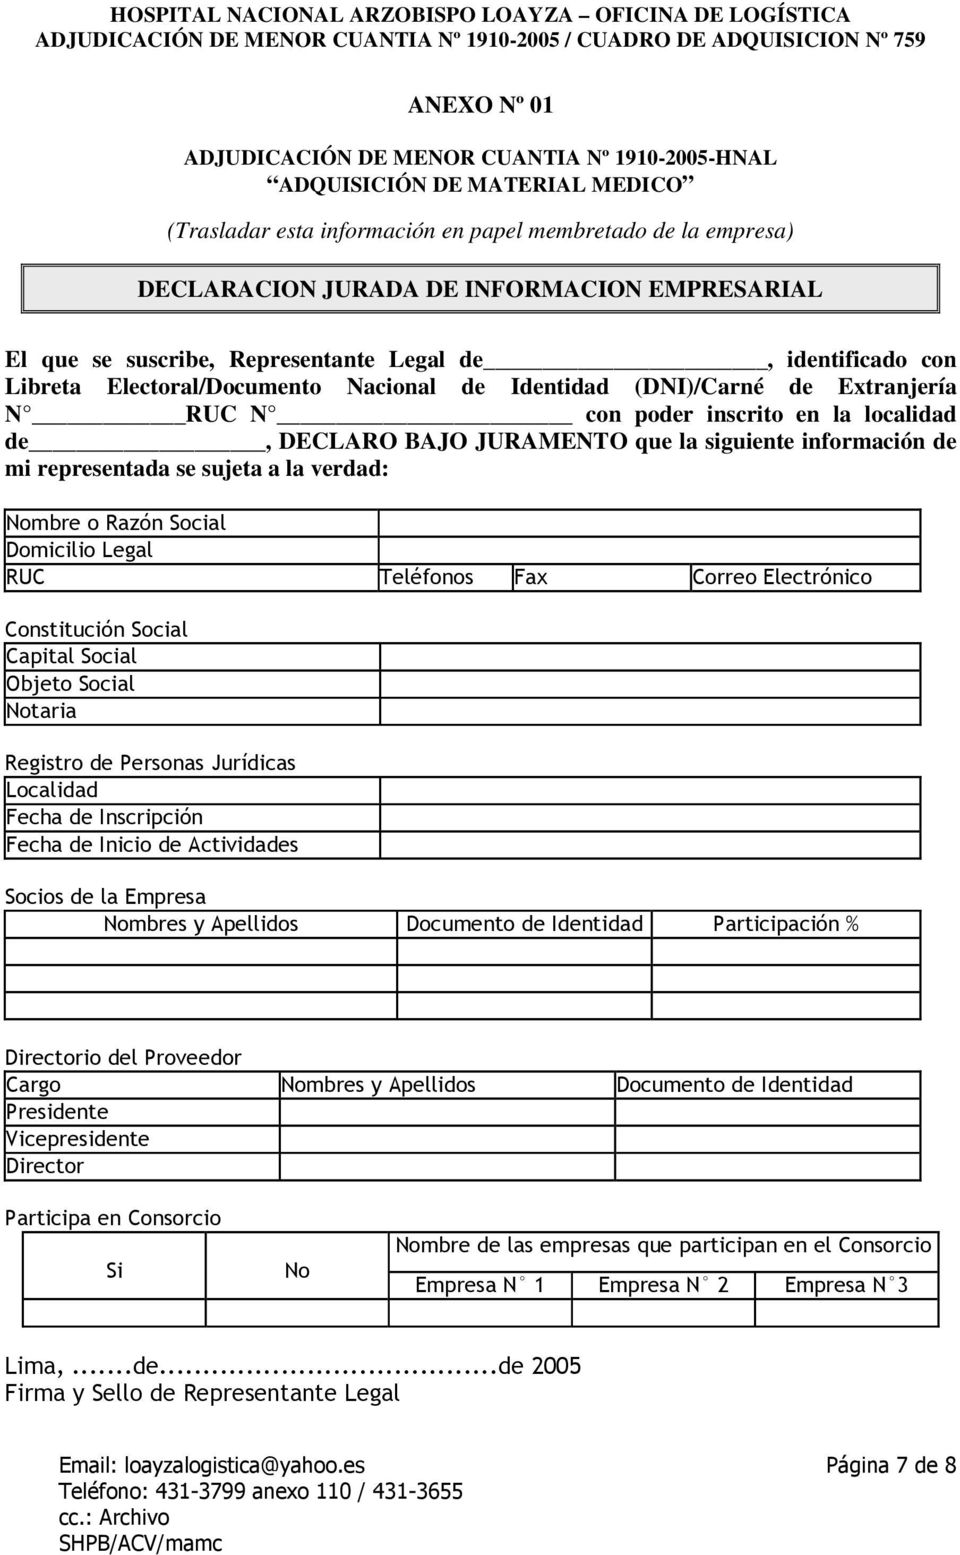 Electoral/Documento Nacional de Identidad (DNI)/Carné de Extranjería N RUC N con poder inscrito en la localidad de, DECLARO BAJO JURAMENTO